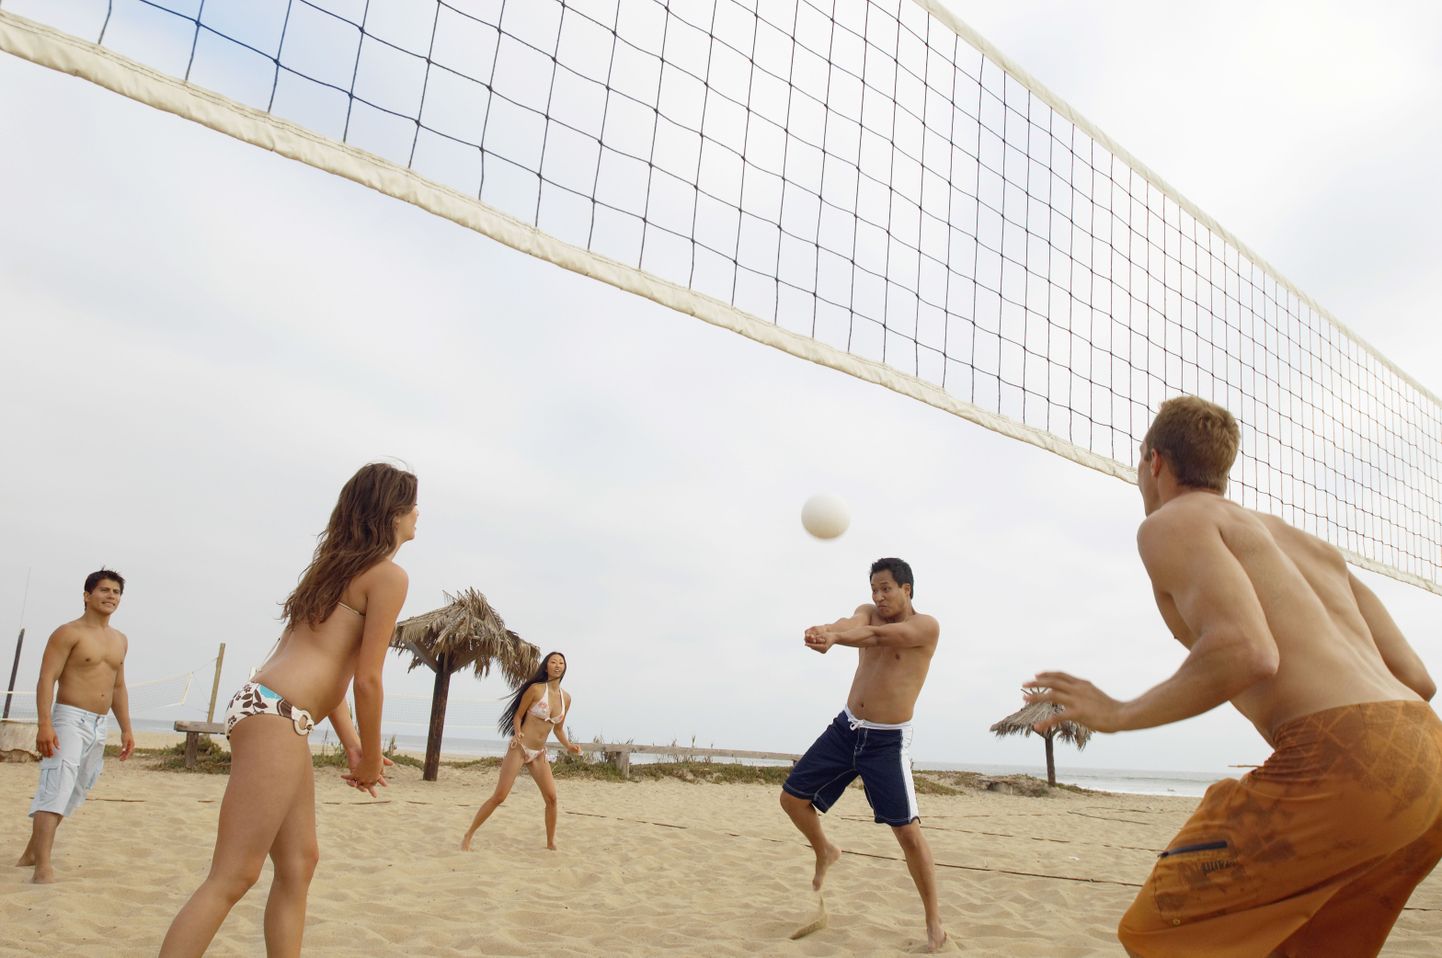 Võrkpall on populaarne suvetegevus, mida võetakse ette ka firma suvepäevadel.